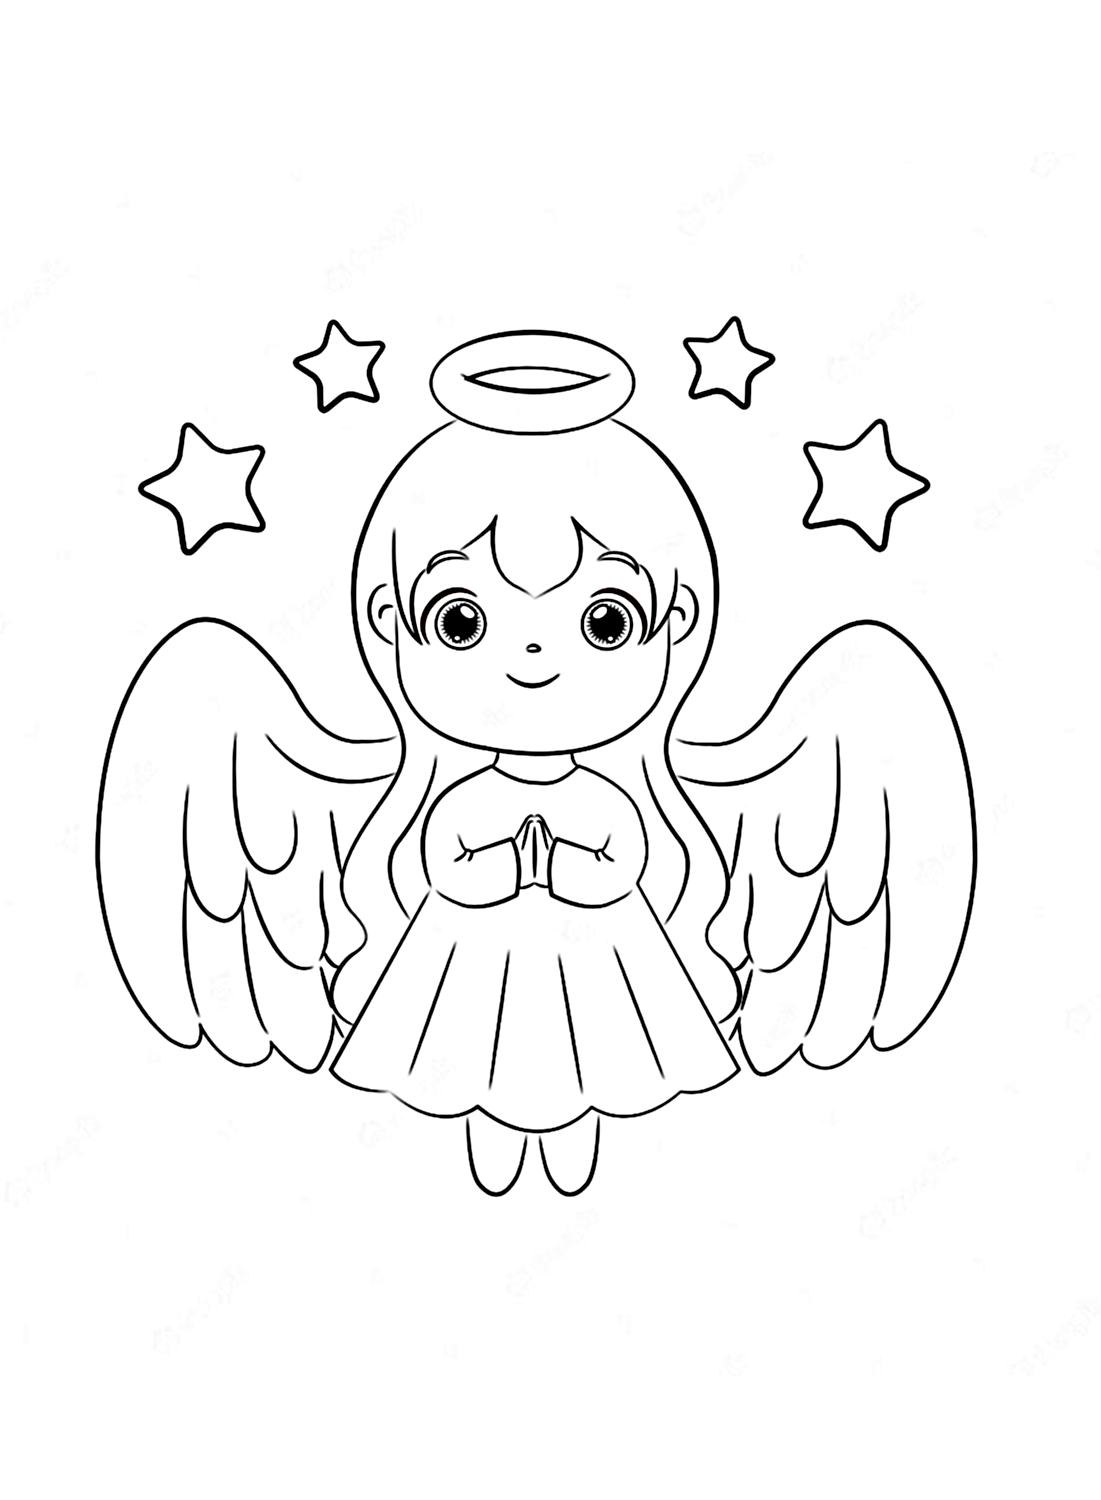 Eine Malvorlage für ein kleines Mädchenengel von Angel